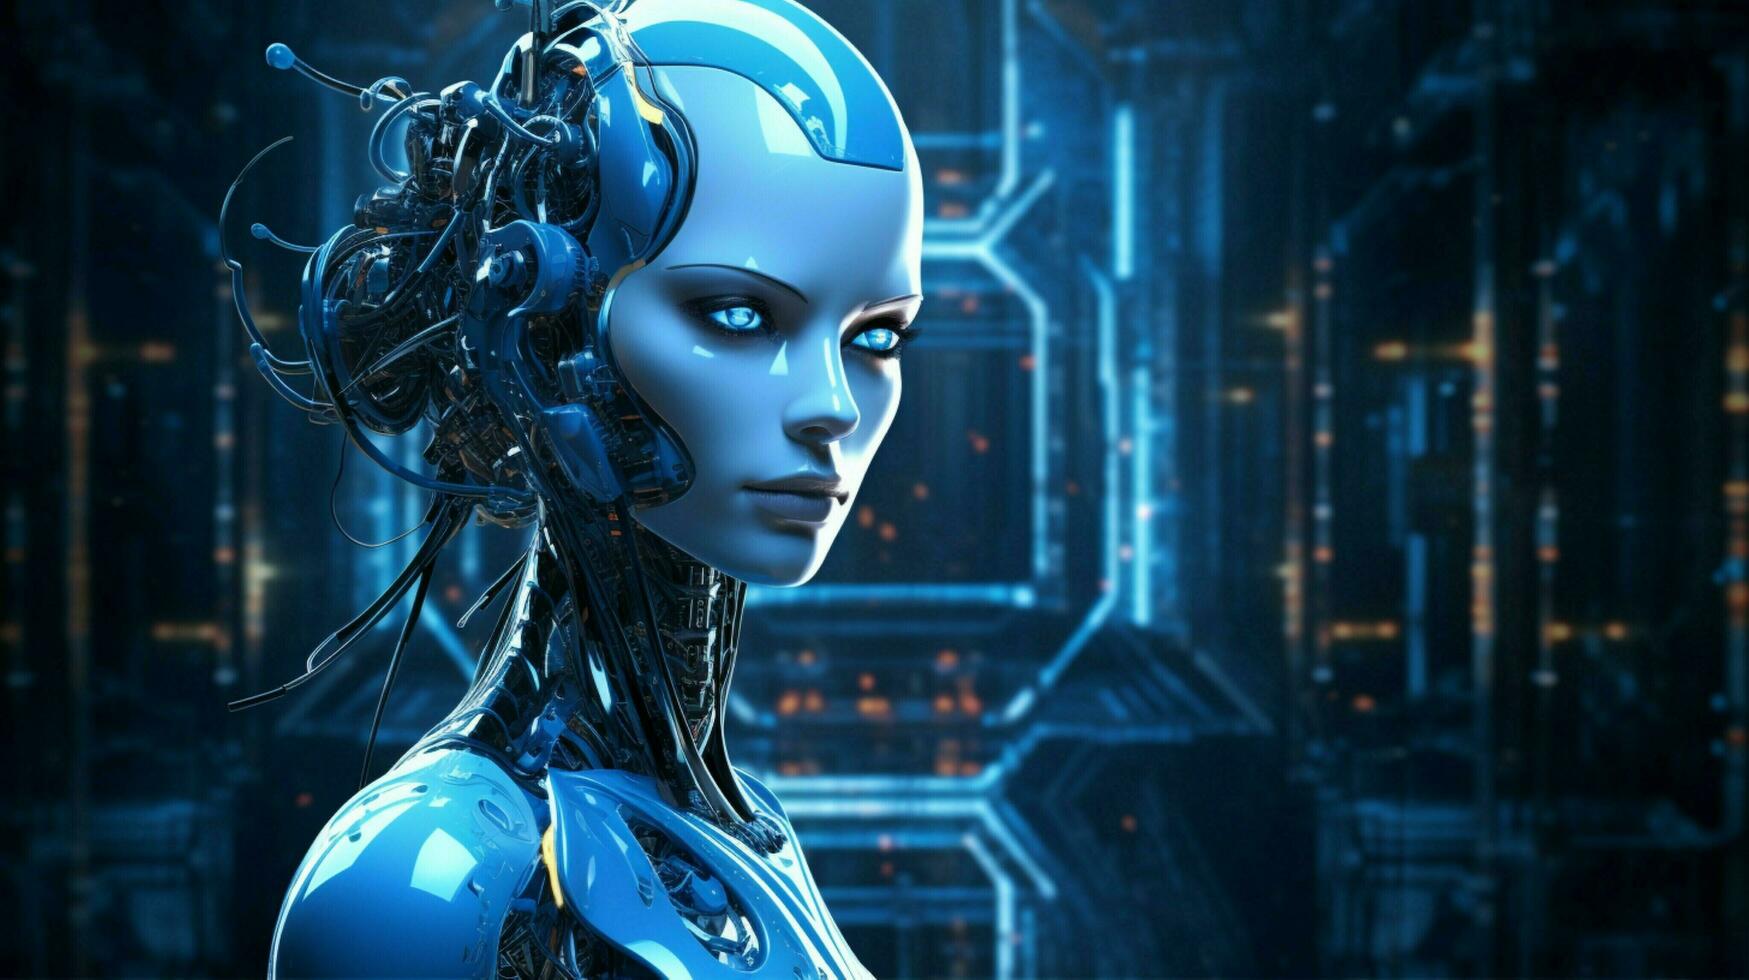 staand futuristische cyborg verlichte door blauw machinerie foto